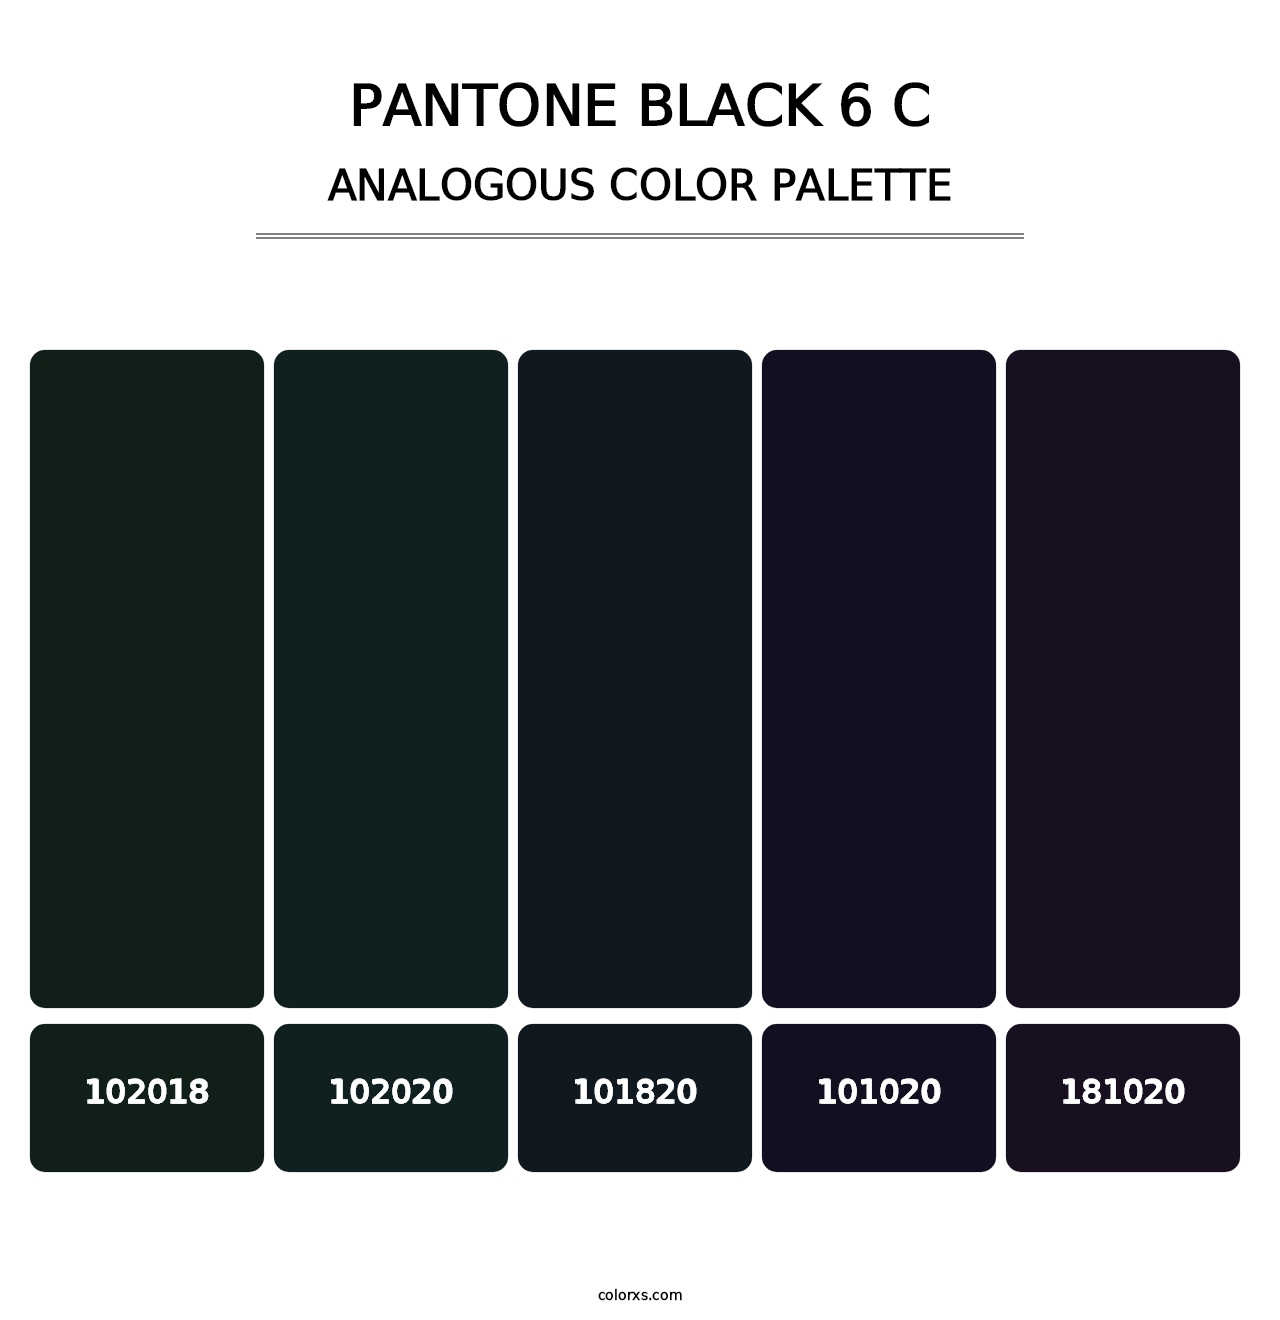 PANTONE Black 6 C - Analogous Color Palette